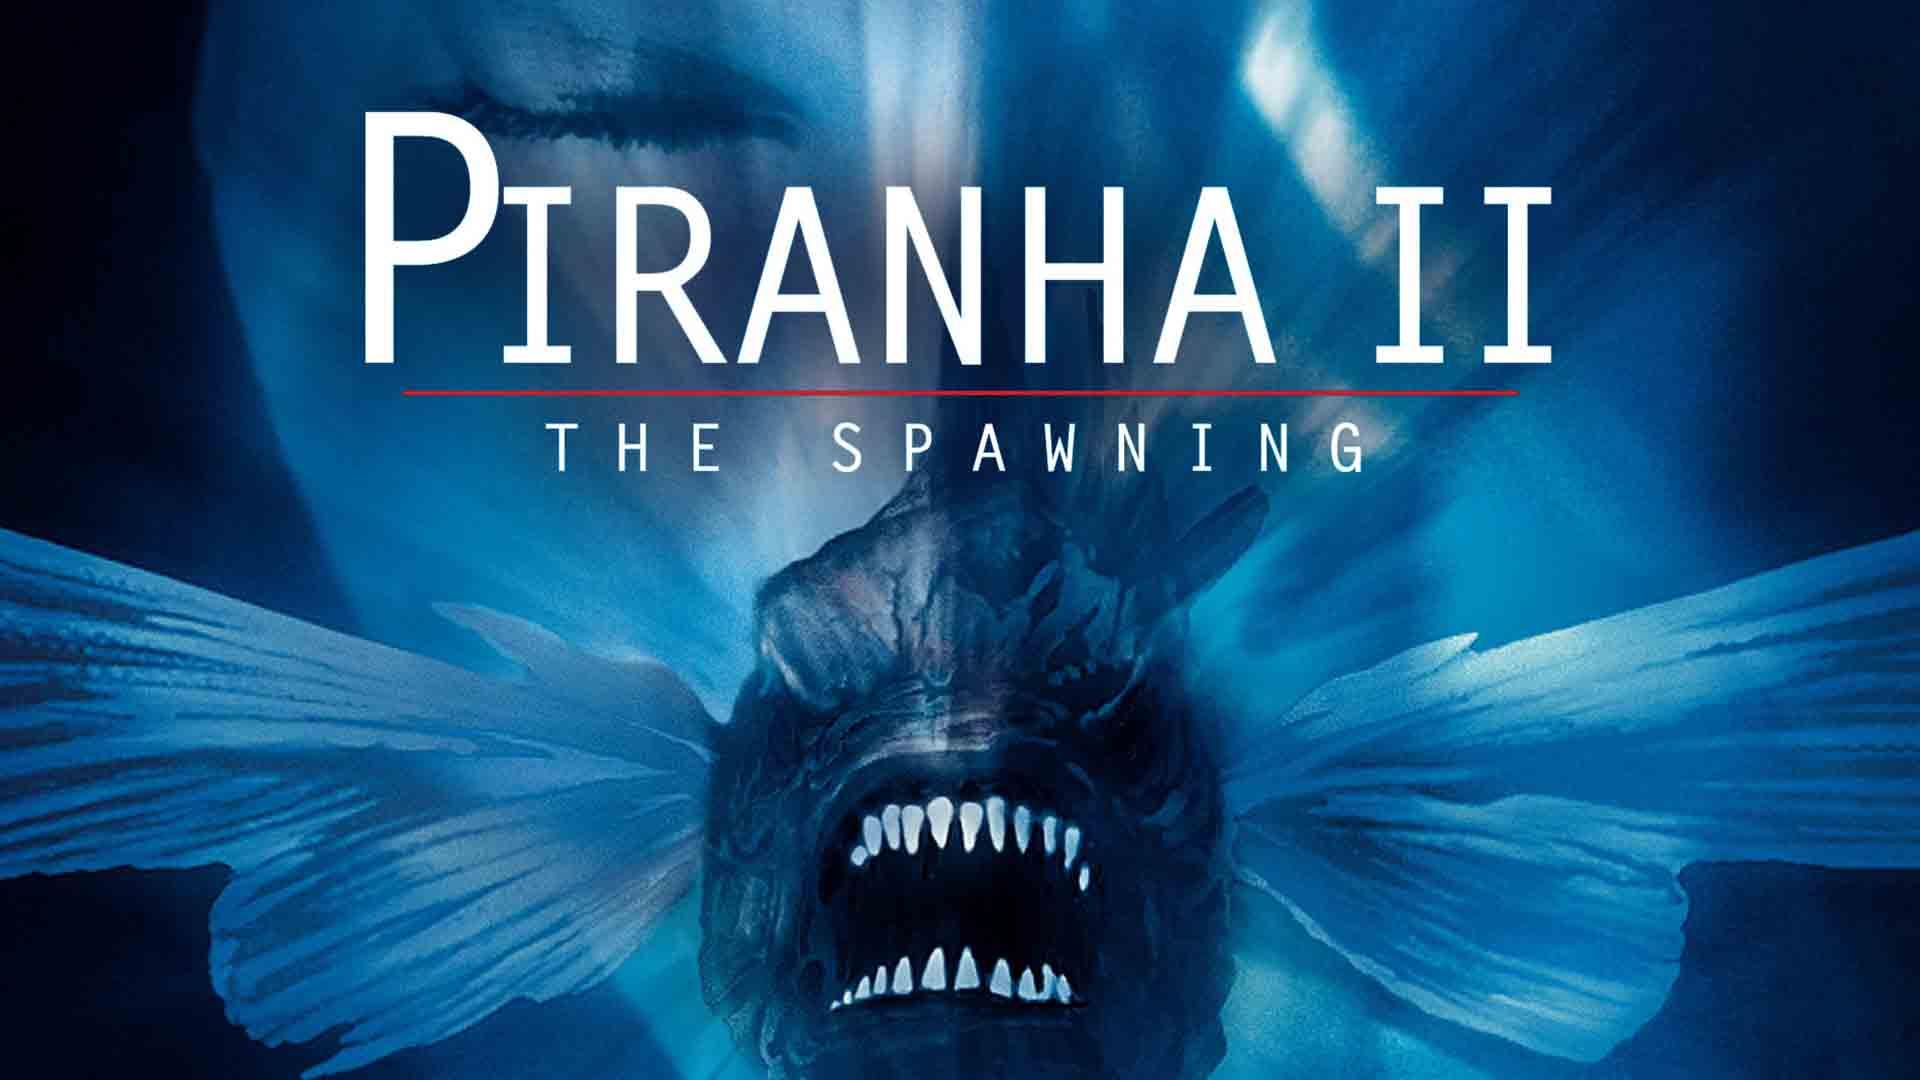 یک ماهی ترسناک در مقابل صورتی زنی که چشمانش را بسته در فیلم Piranha II: The Spawning